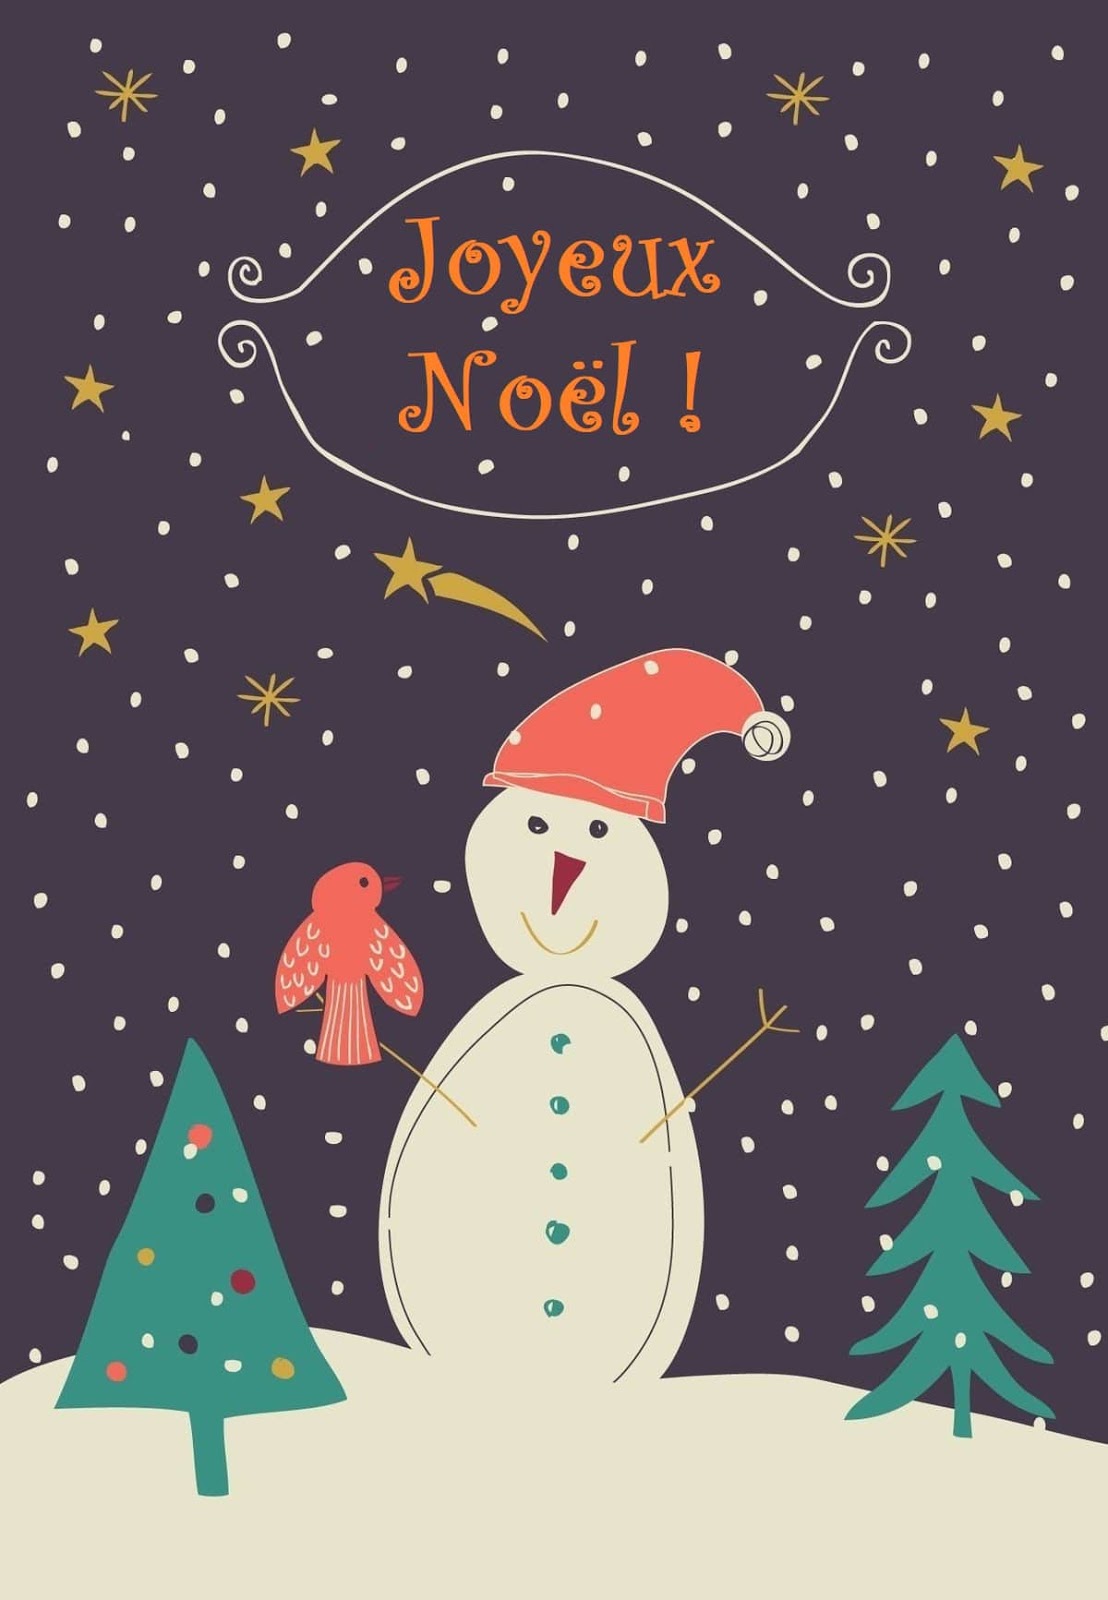 Joyeux Noel Images Cartes De Vœux Adorables Poesie D Amour